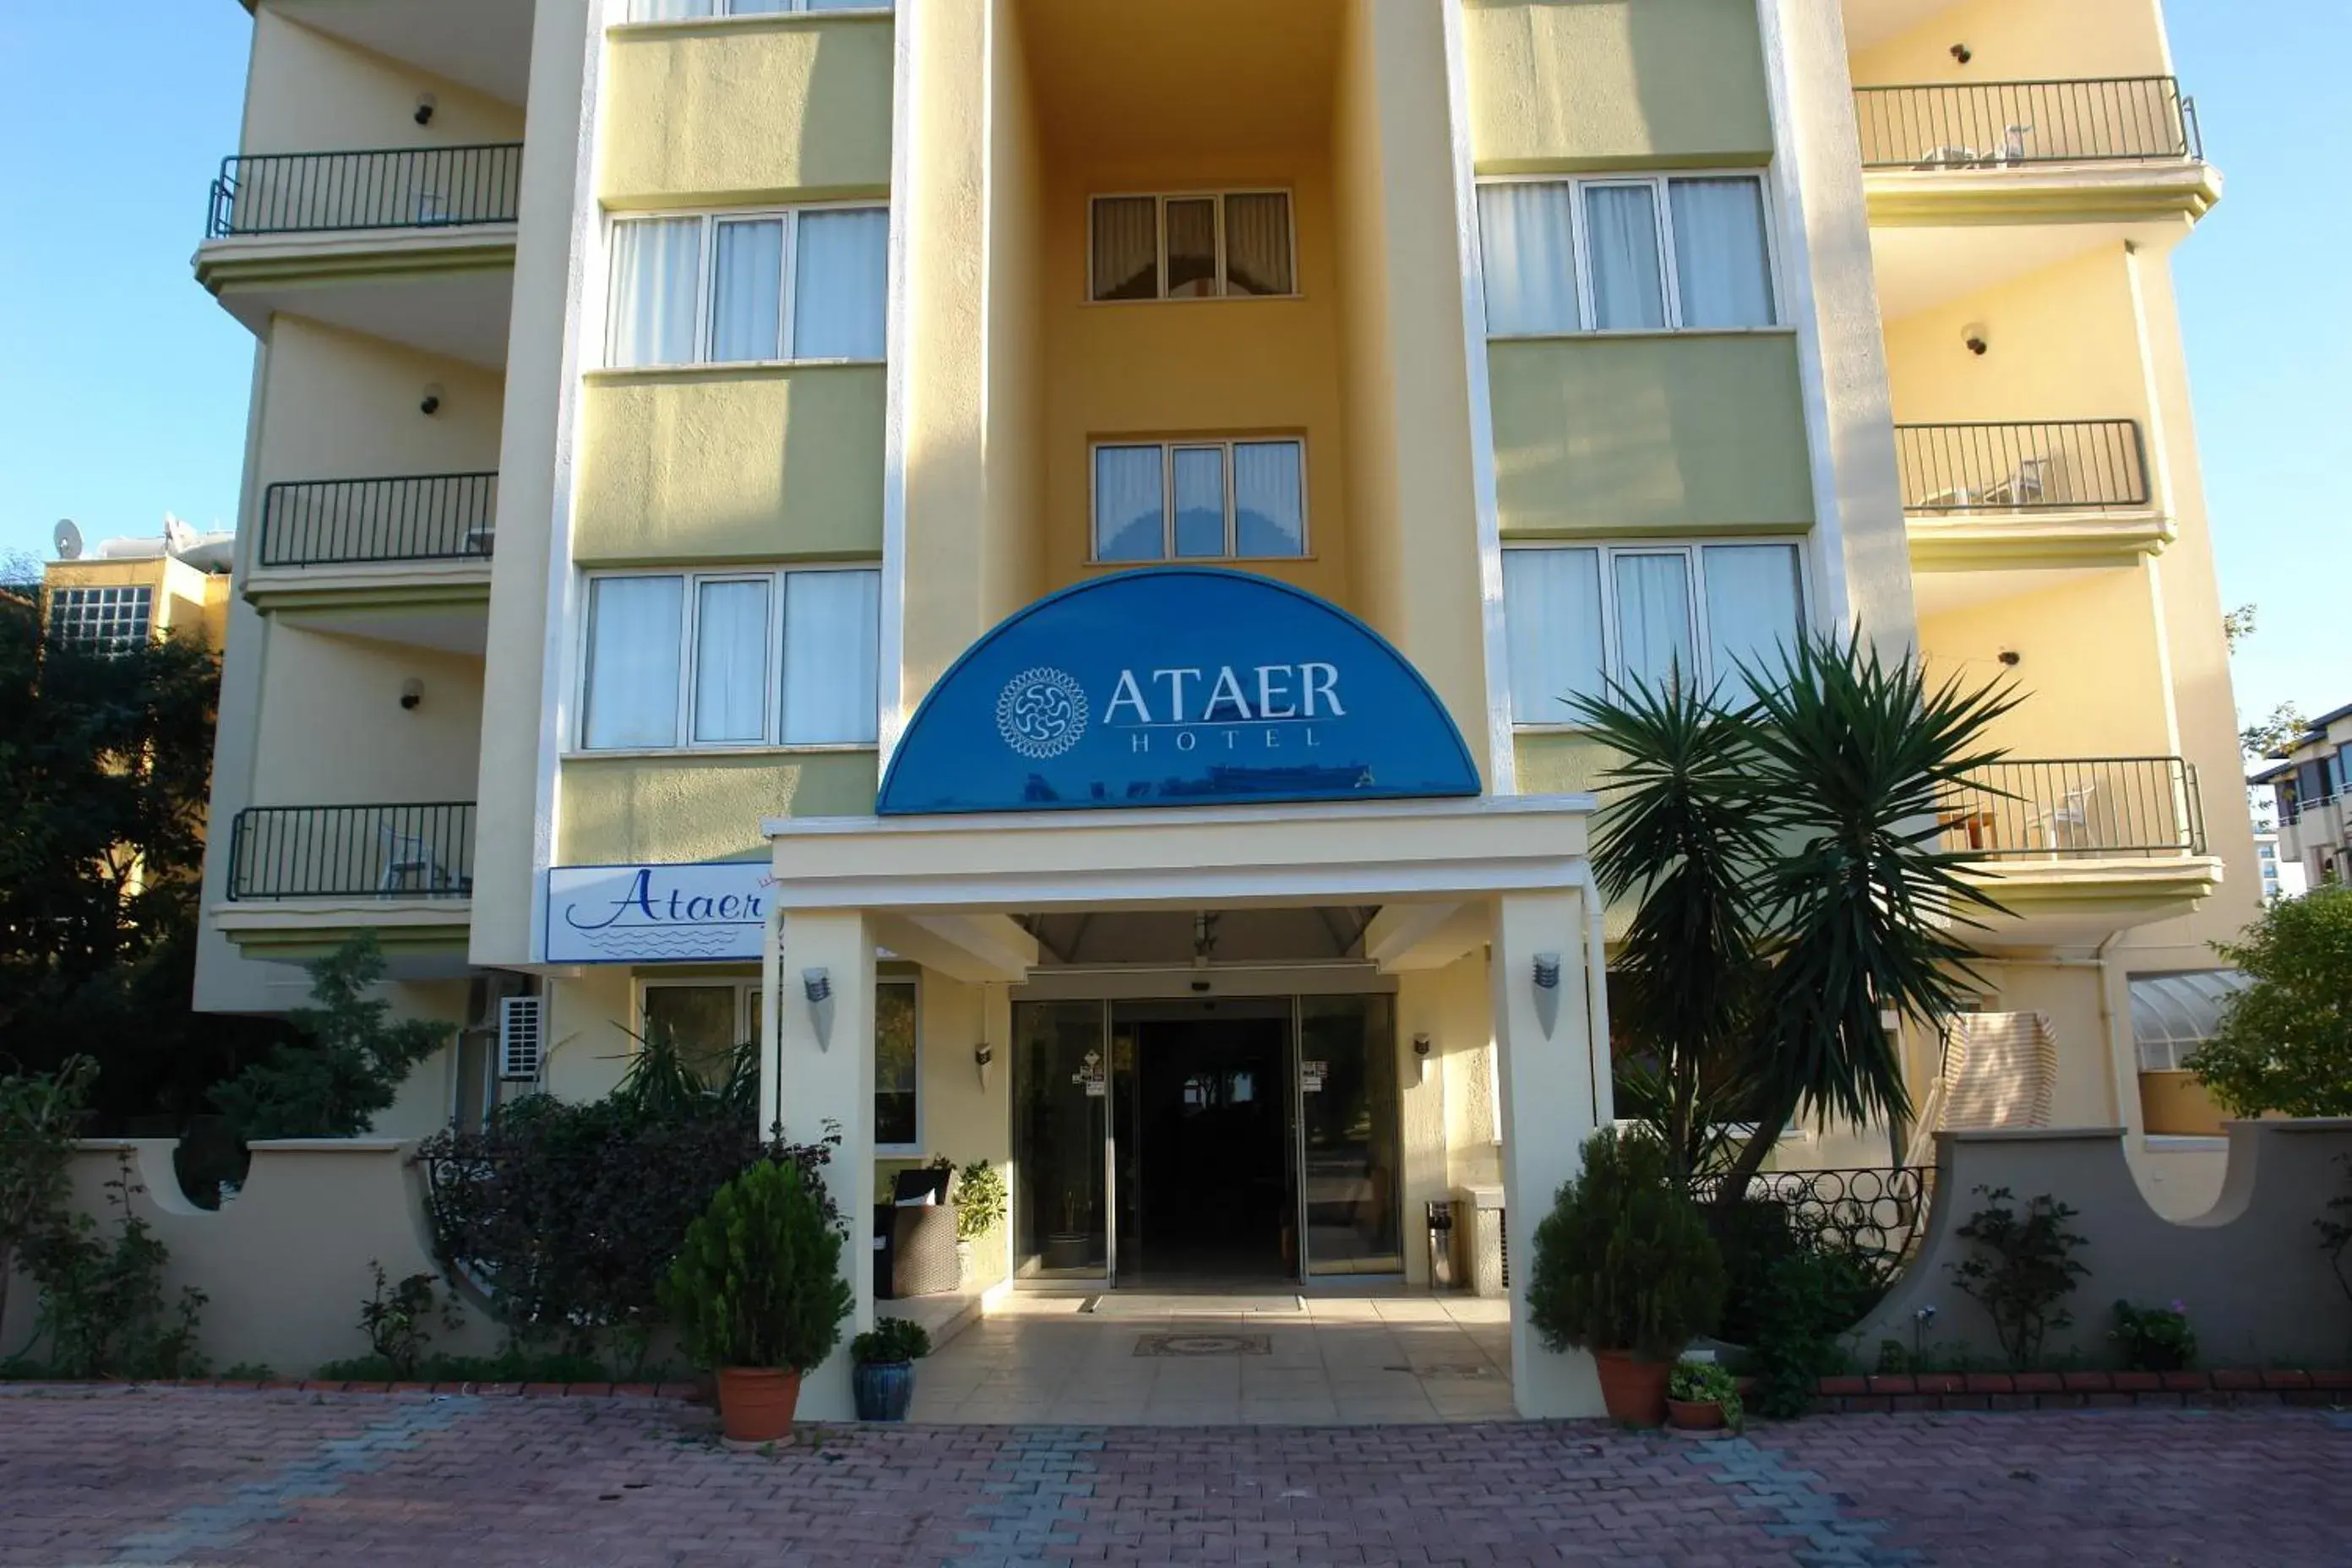 Facade/entrance, Property Building in Ataer Hotel